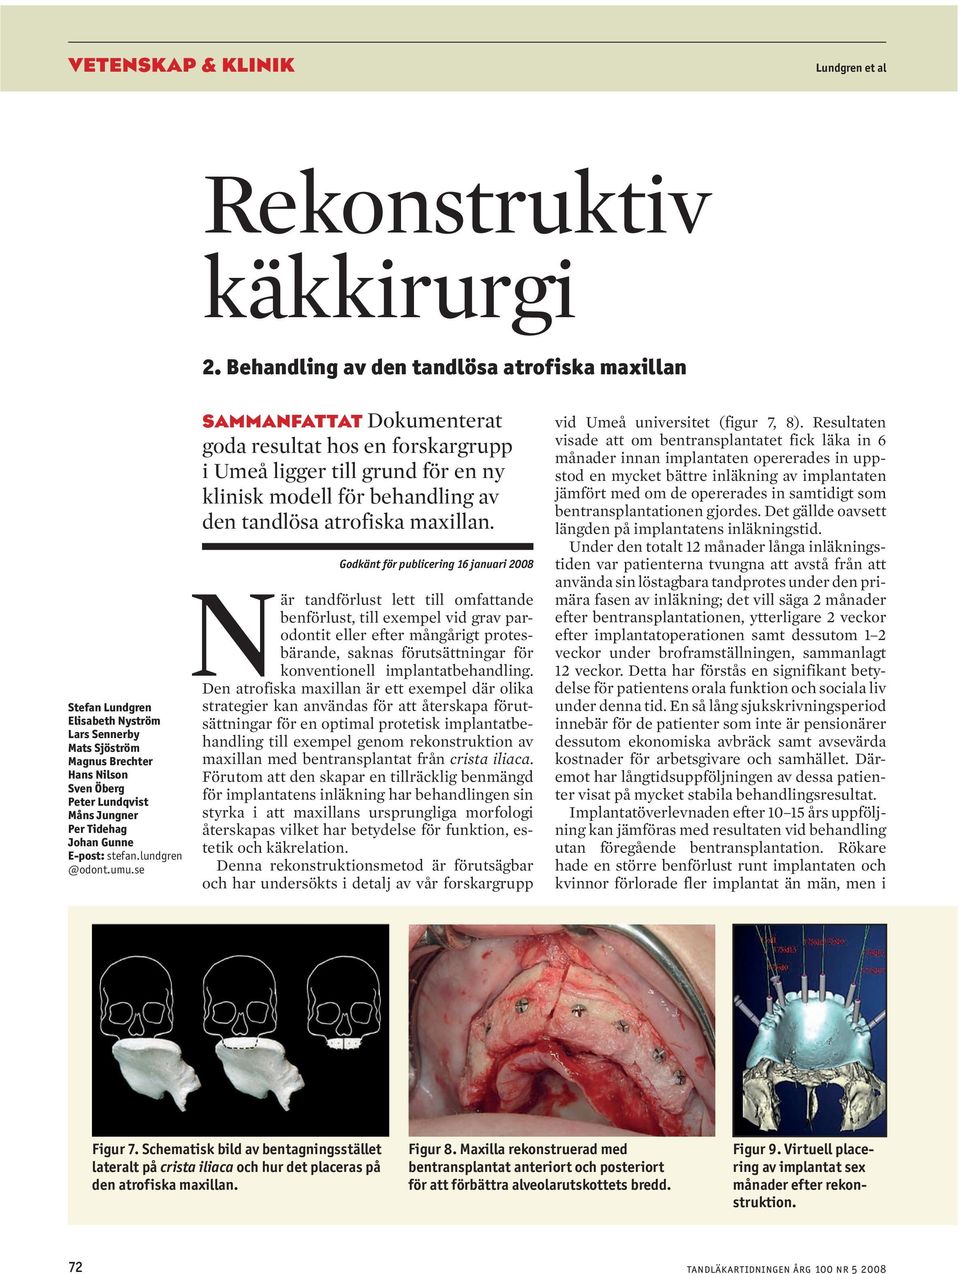 E-post: stefan.lundgren @odont.umu.se sammanfattat Dokumenterat goda resultat hos en forskargrupp i Umeå ligger till grund för en ny klinisk modell för behandling av den tandlösa atrofiska maxillan.